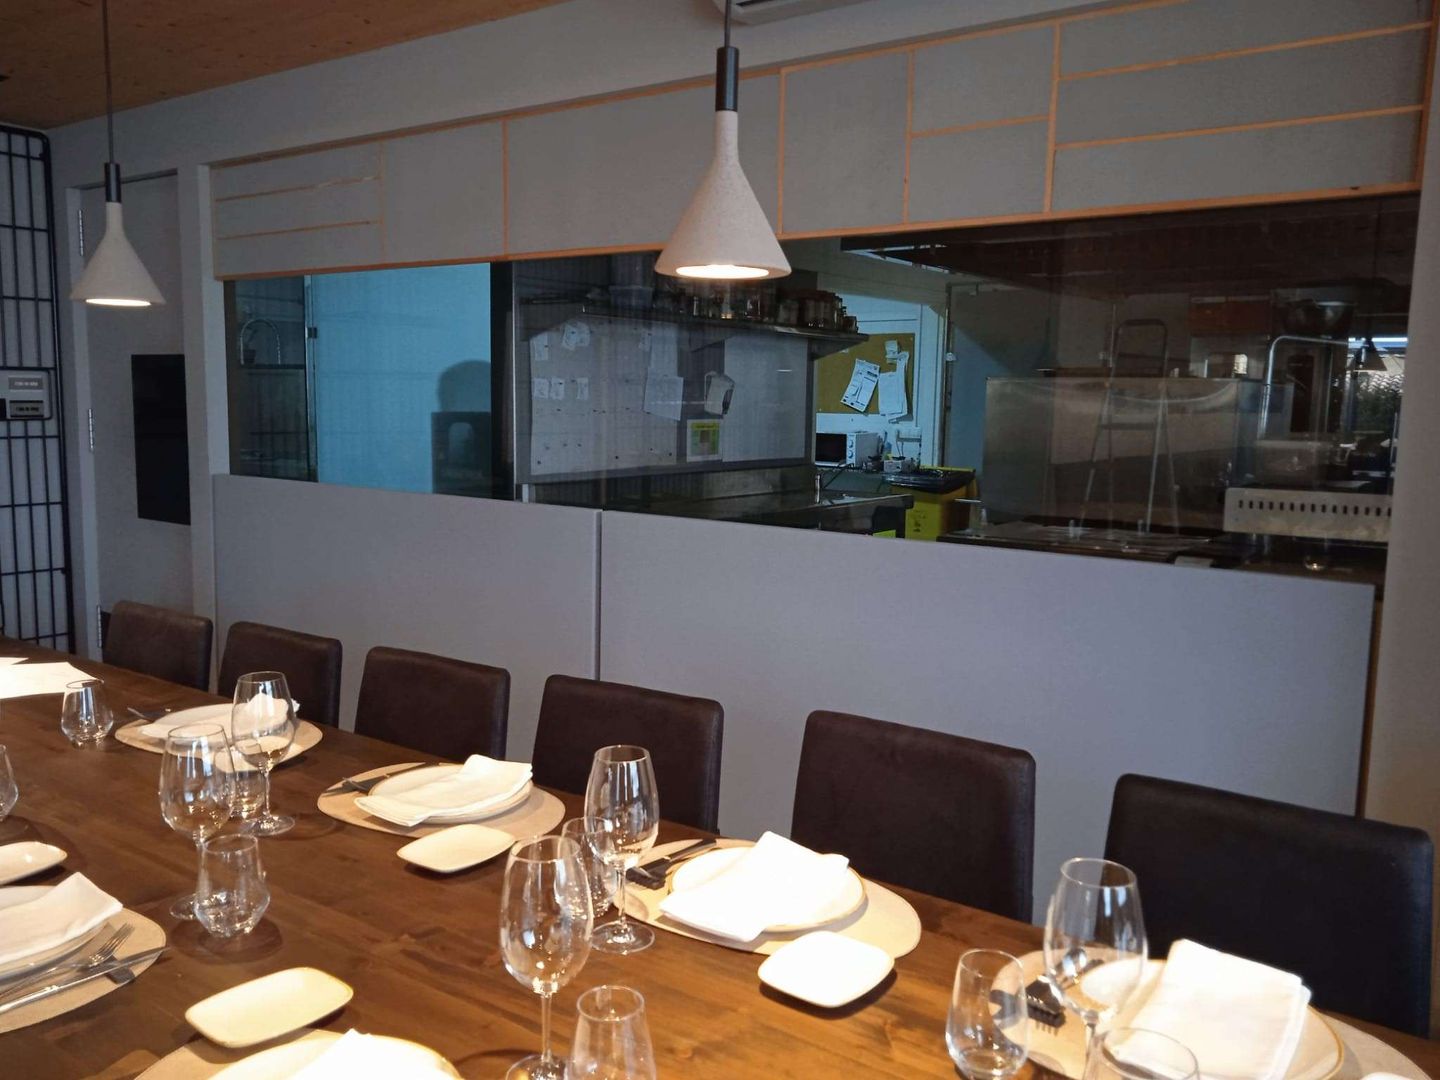 Paneles acústicos para reducir la reverberación en los restaurantes, Vertisol Internacional SRL Vertisol Internacional SRL Modern dining room